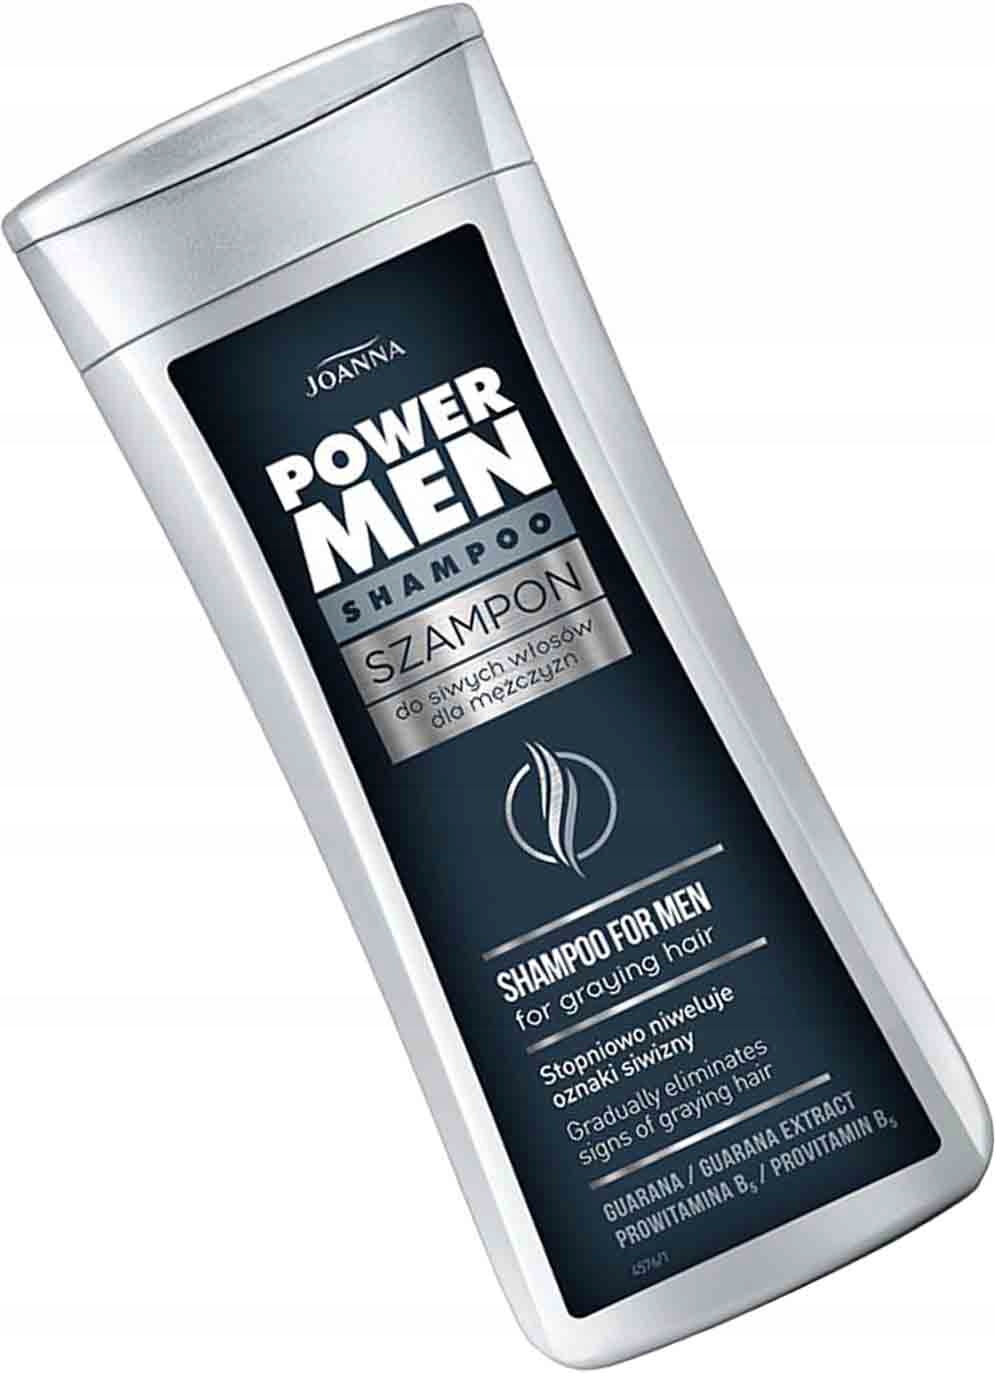 power hair szampon niwelujący siwiznę dla mężczyzn opinie